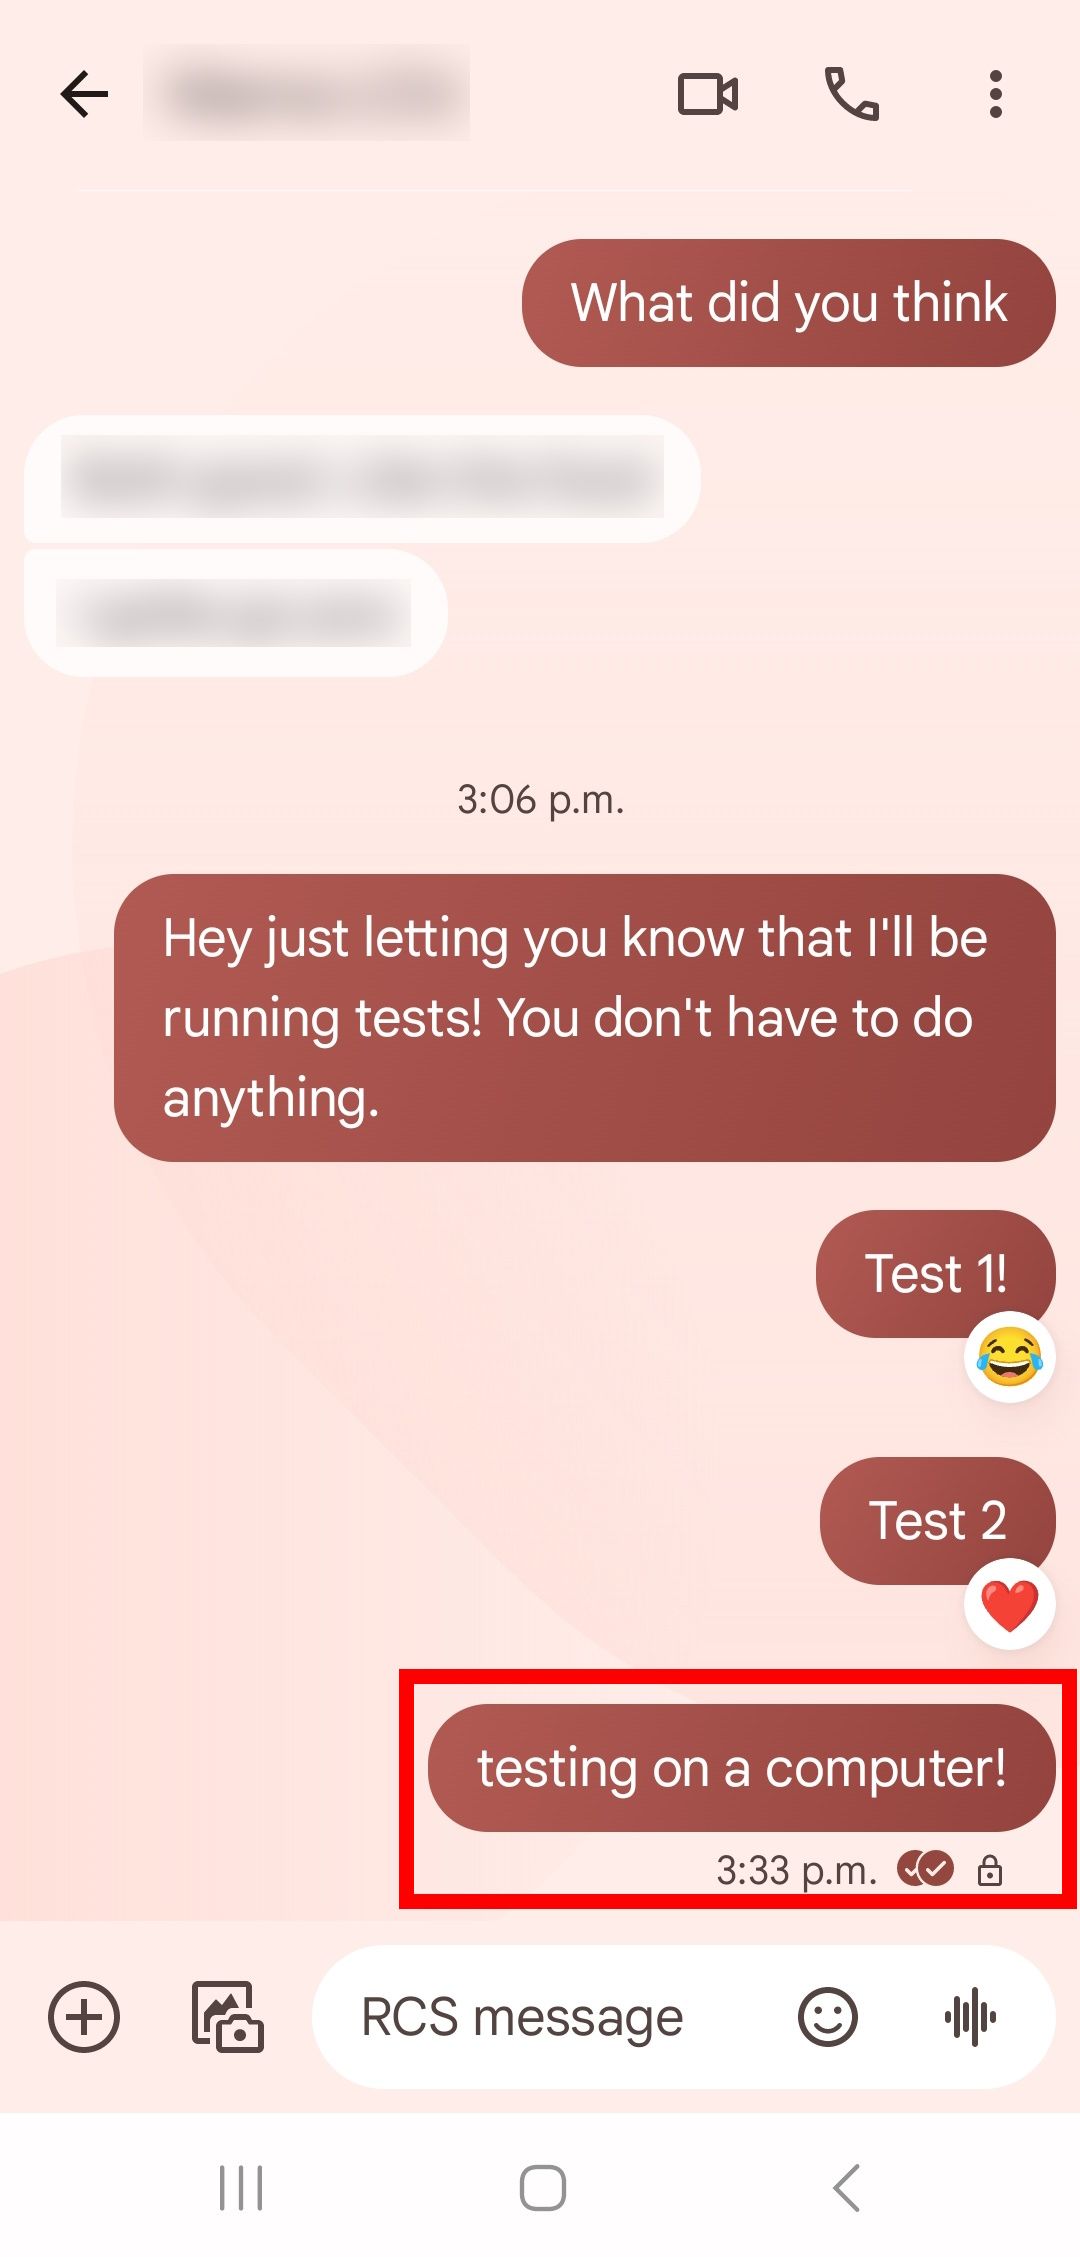 contorno de retângulo vermelho sobre mensagem de texto sem emoji de reação no aplicativo de mensagens do Google